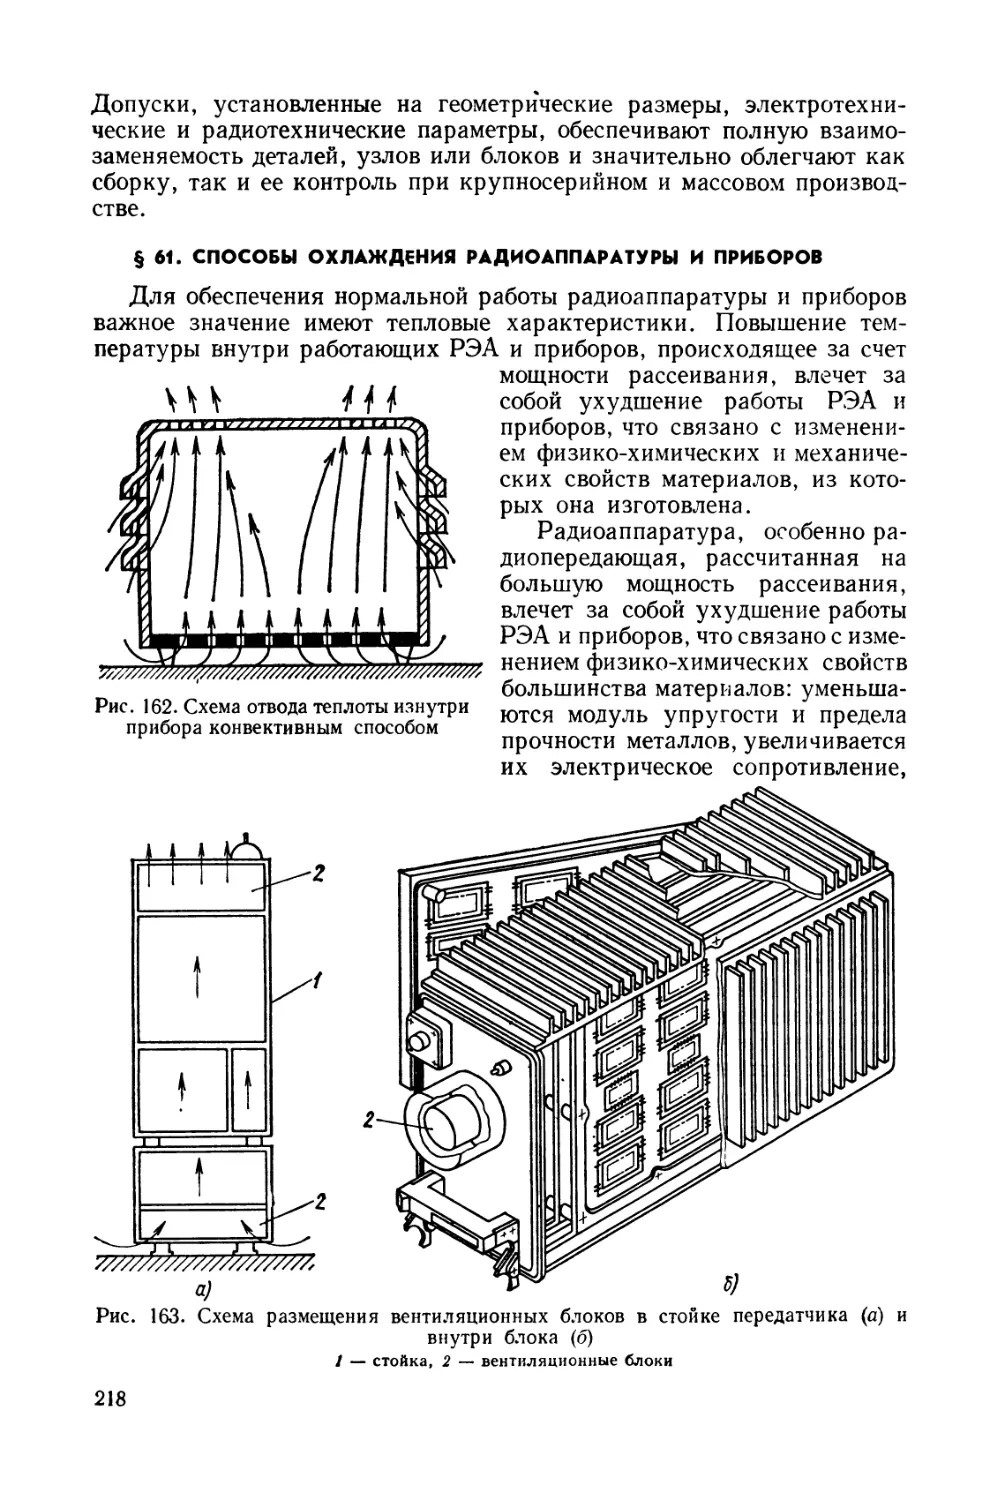 §61. Способы охлаждения радиоаппаратуры и приборов